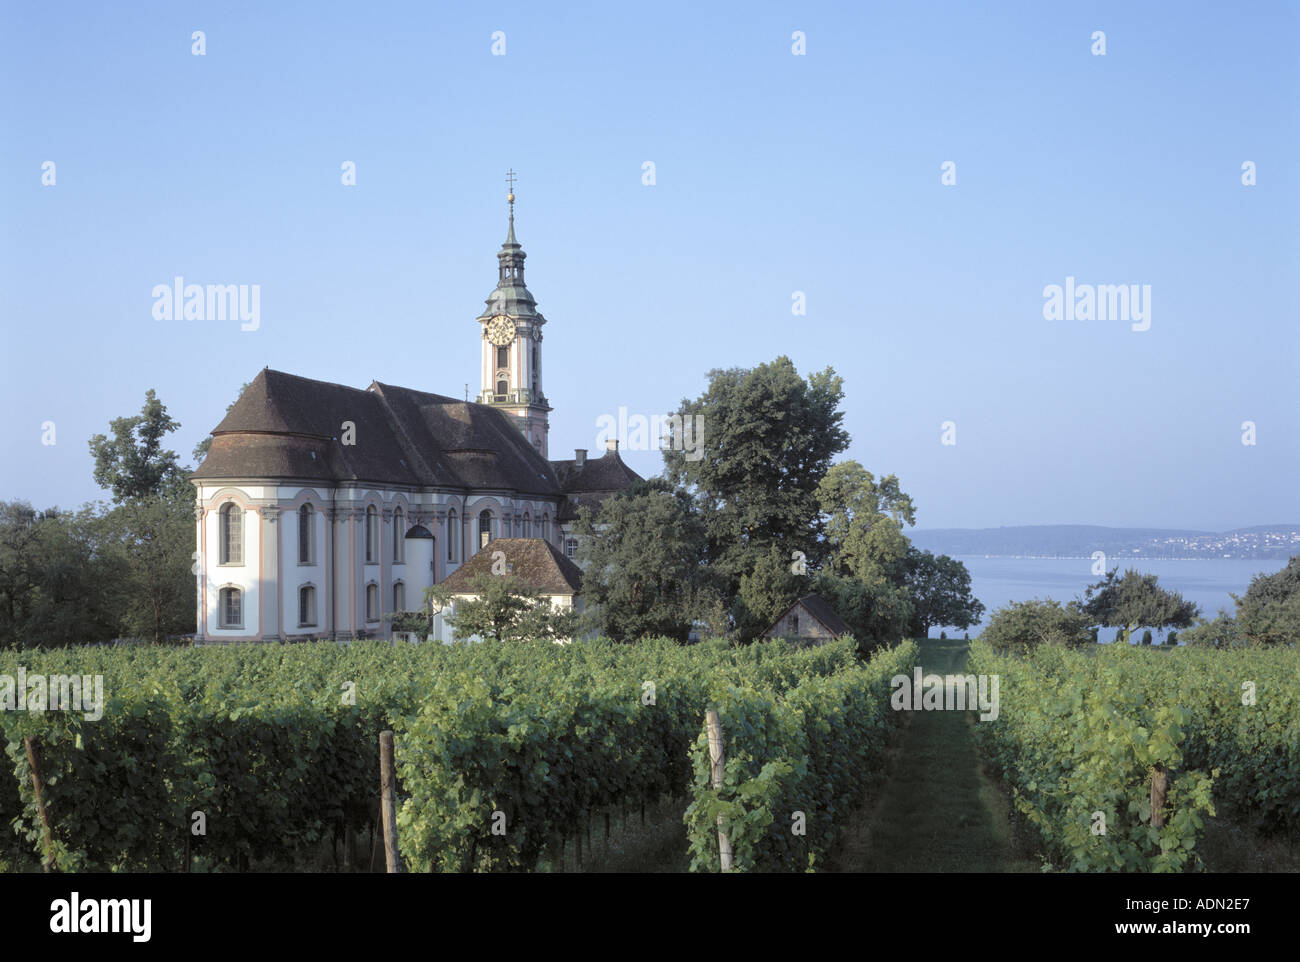 Birnau, Klosterkirche, Landschaft mit Bodensee Foto Stock